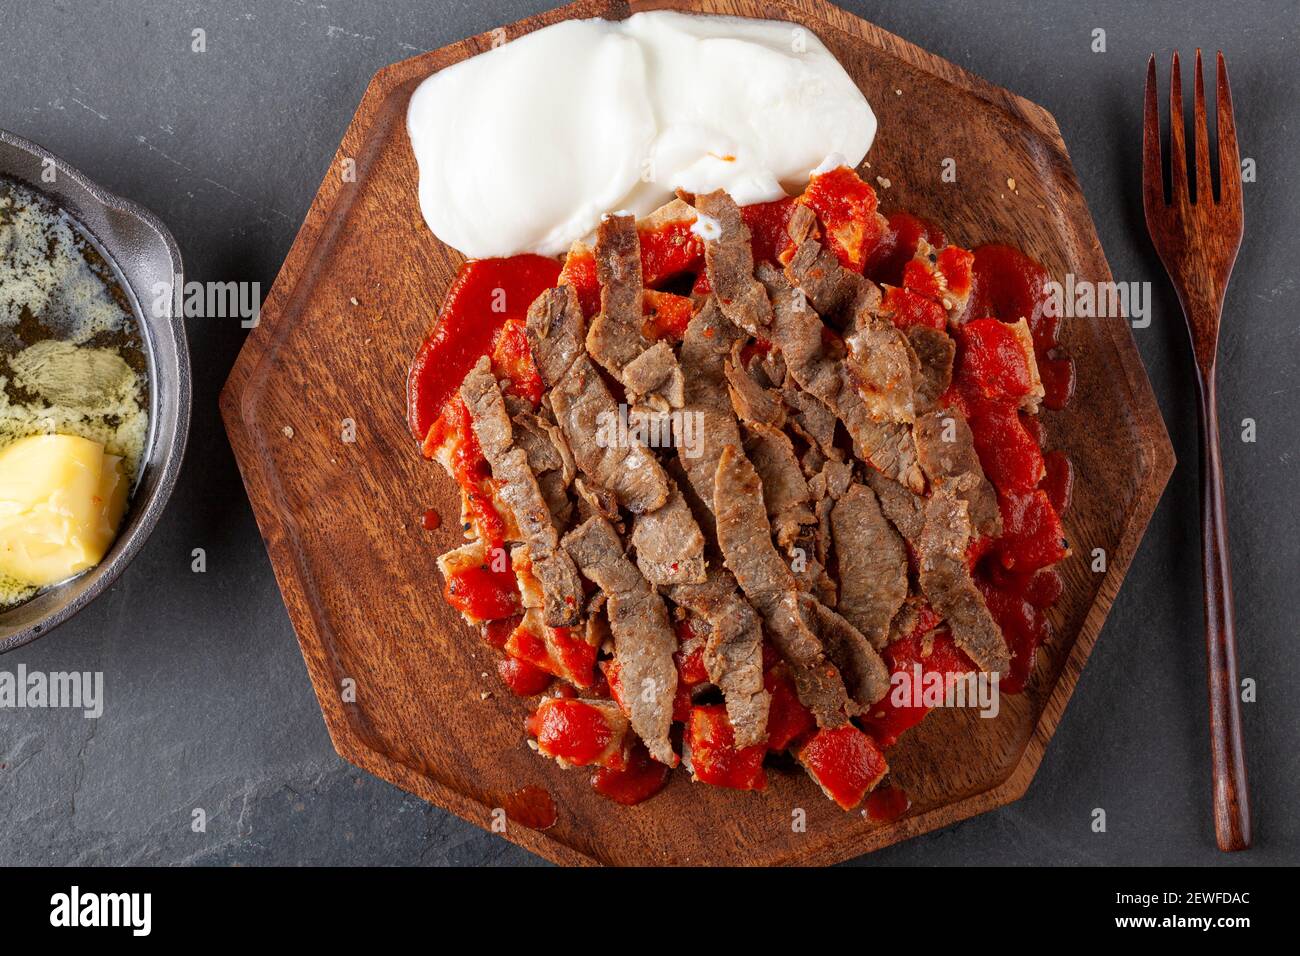 Tradizionale donatore turco kebab (shawarma) fatto con carne di agnello tagliata alla griglia al carbone, servita su pezzetti di pane piatto turco con salsa di pomodoro. A ca Foto Stock